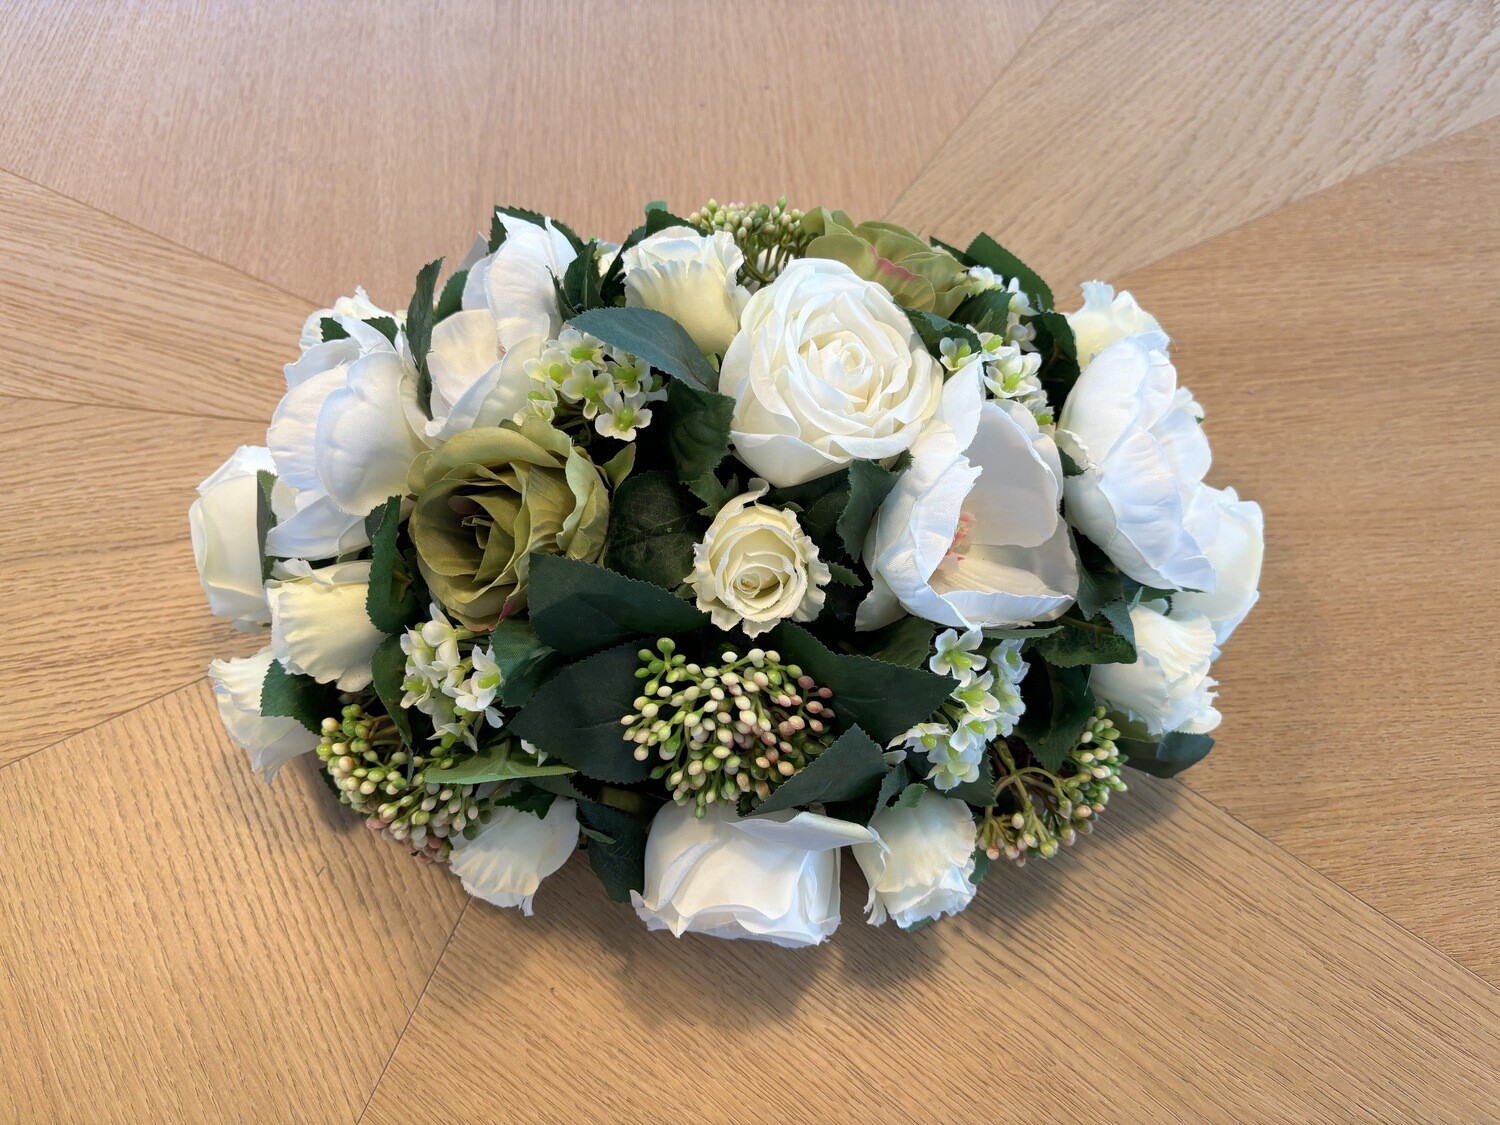 Bloemstuk in zijde witte bloemen, ovale vorm (30cm x 40cm)